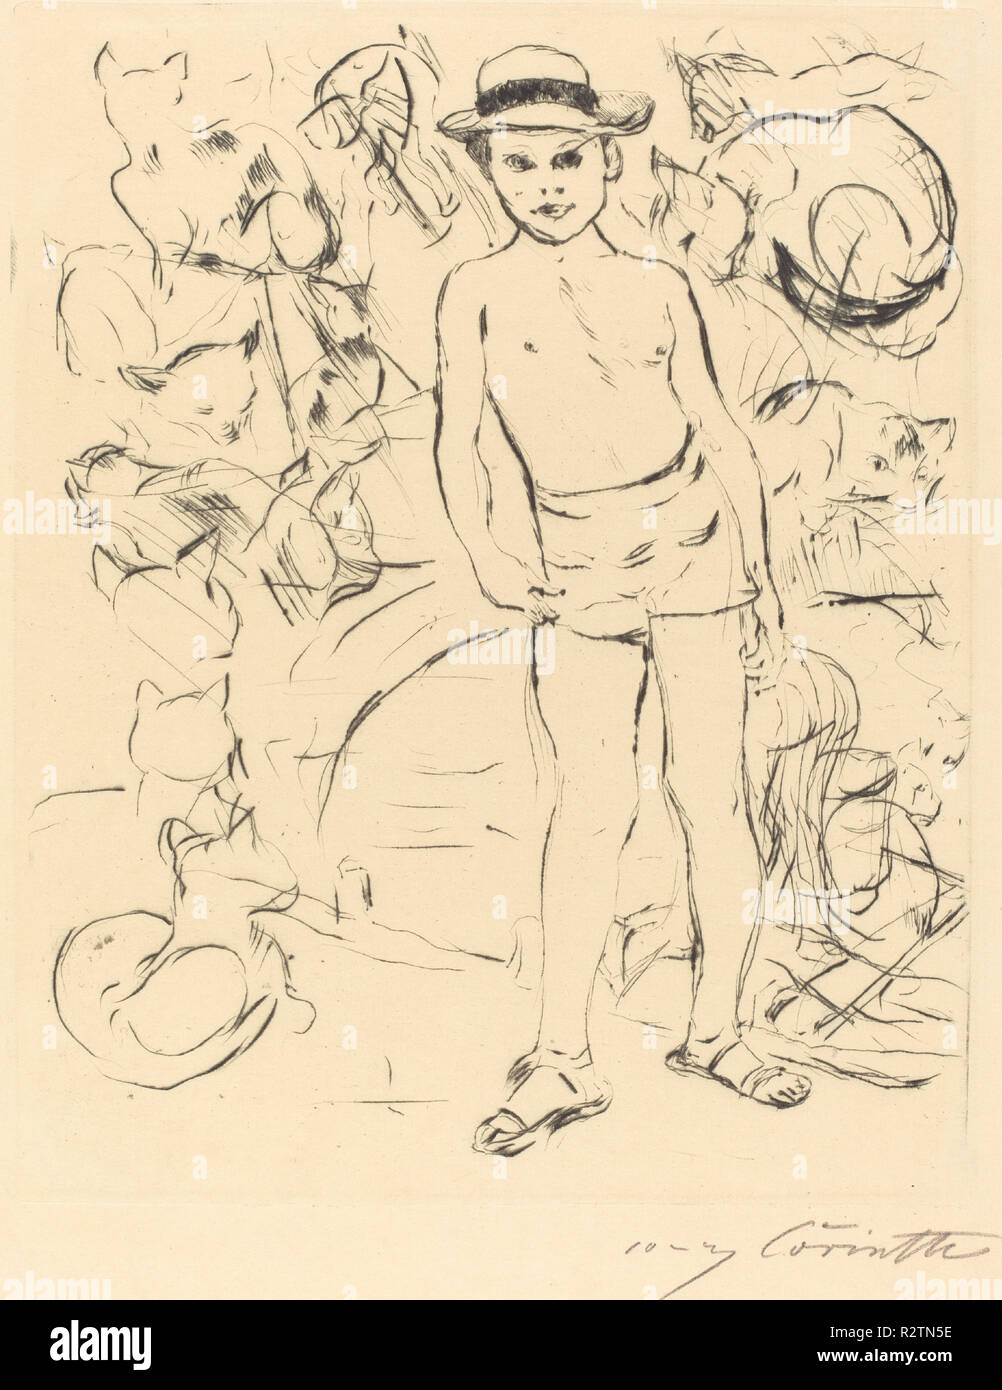 Ragazzo che indossa Bathing-Trunks e cappello di paglia (Knabe mit Badehose und Strohhut). Data: 1915. Dimensioni: piastra: 24,5 x 19,8 cm (9 5/8 x 7 13/16 in.) in generale: 33,1 x 24,4 cm (13 1/16 x 9 5/8 in.). Medium: puntasecca in nero su carta vergata. Museo: National Gallery of Art di Washington DC. Autore: Lovis Corinth. Foto Stock